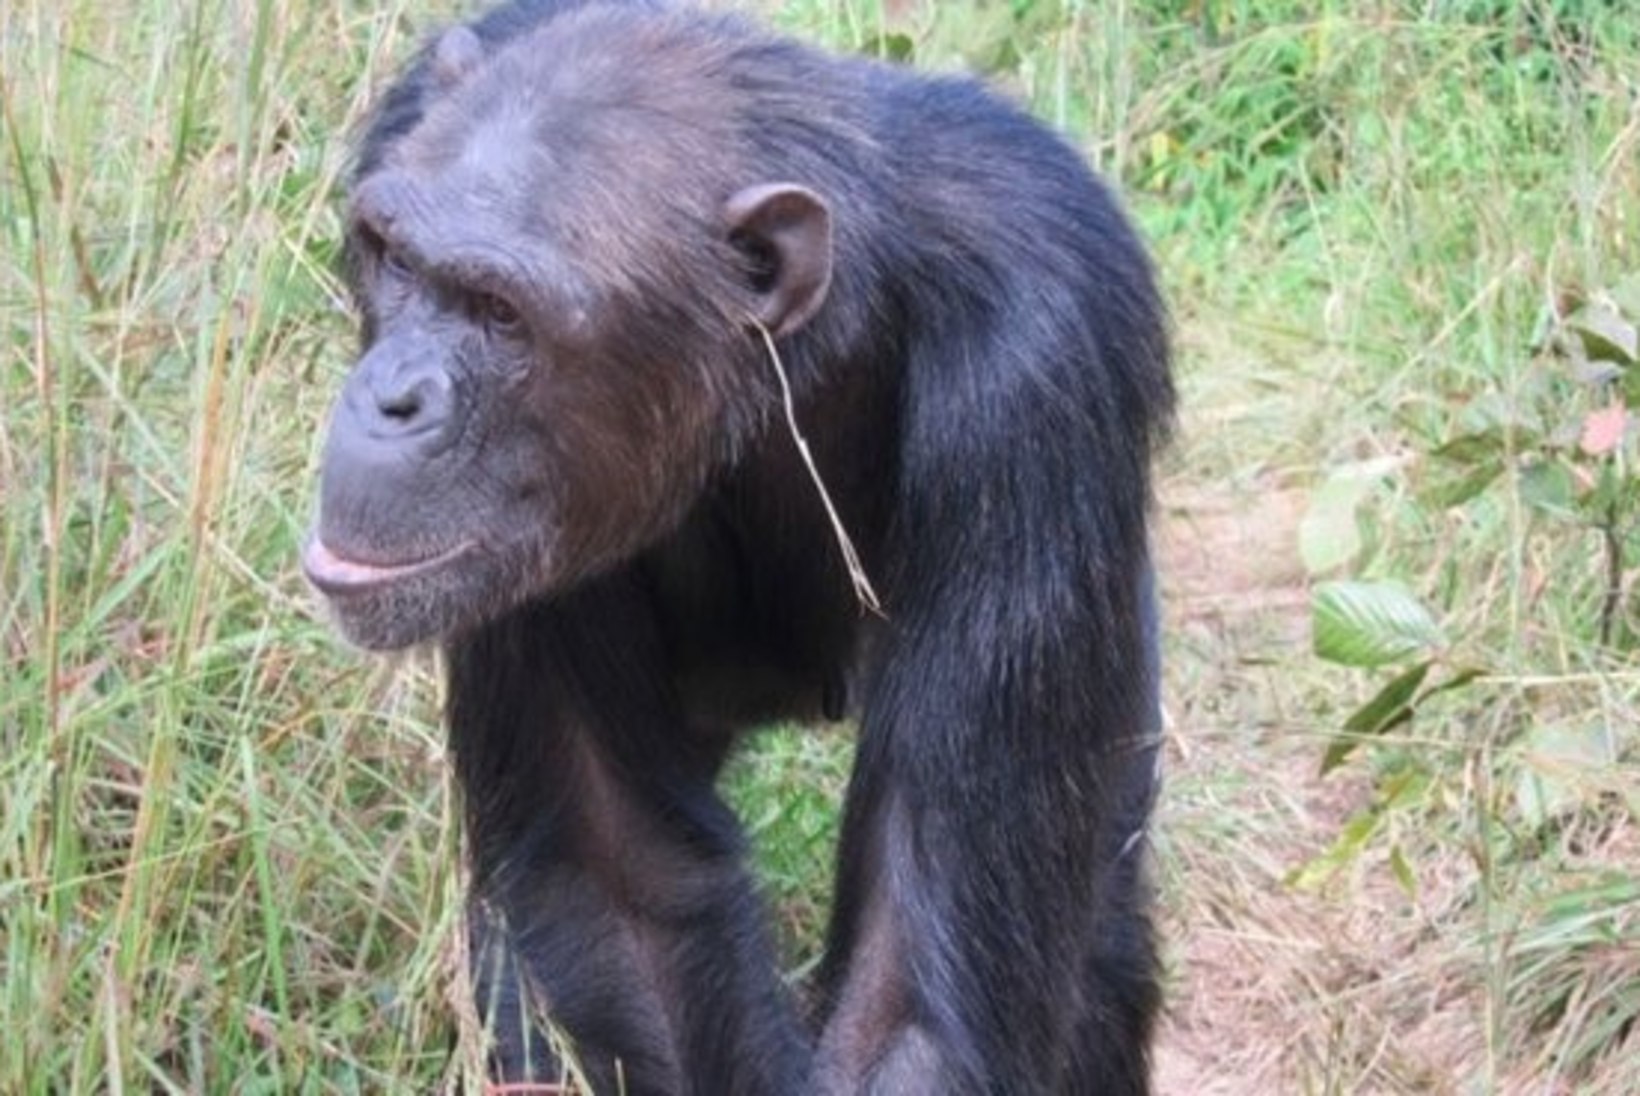 PÄEVA KASUTU FAKT | Kõige moeteadlikumad šimpansid elavad Sambias